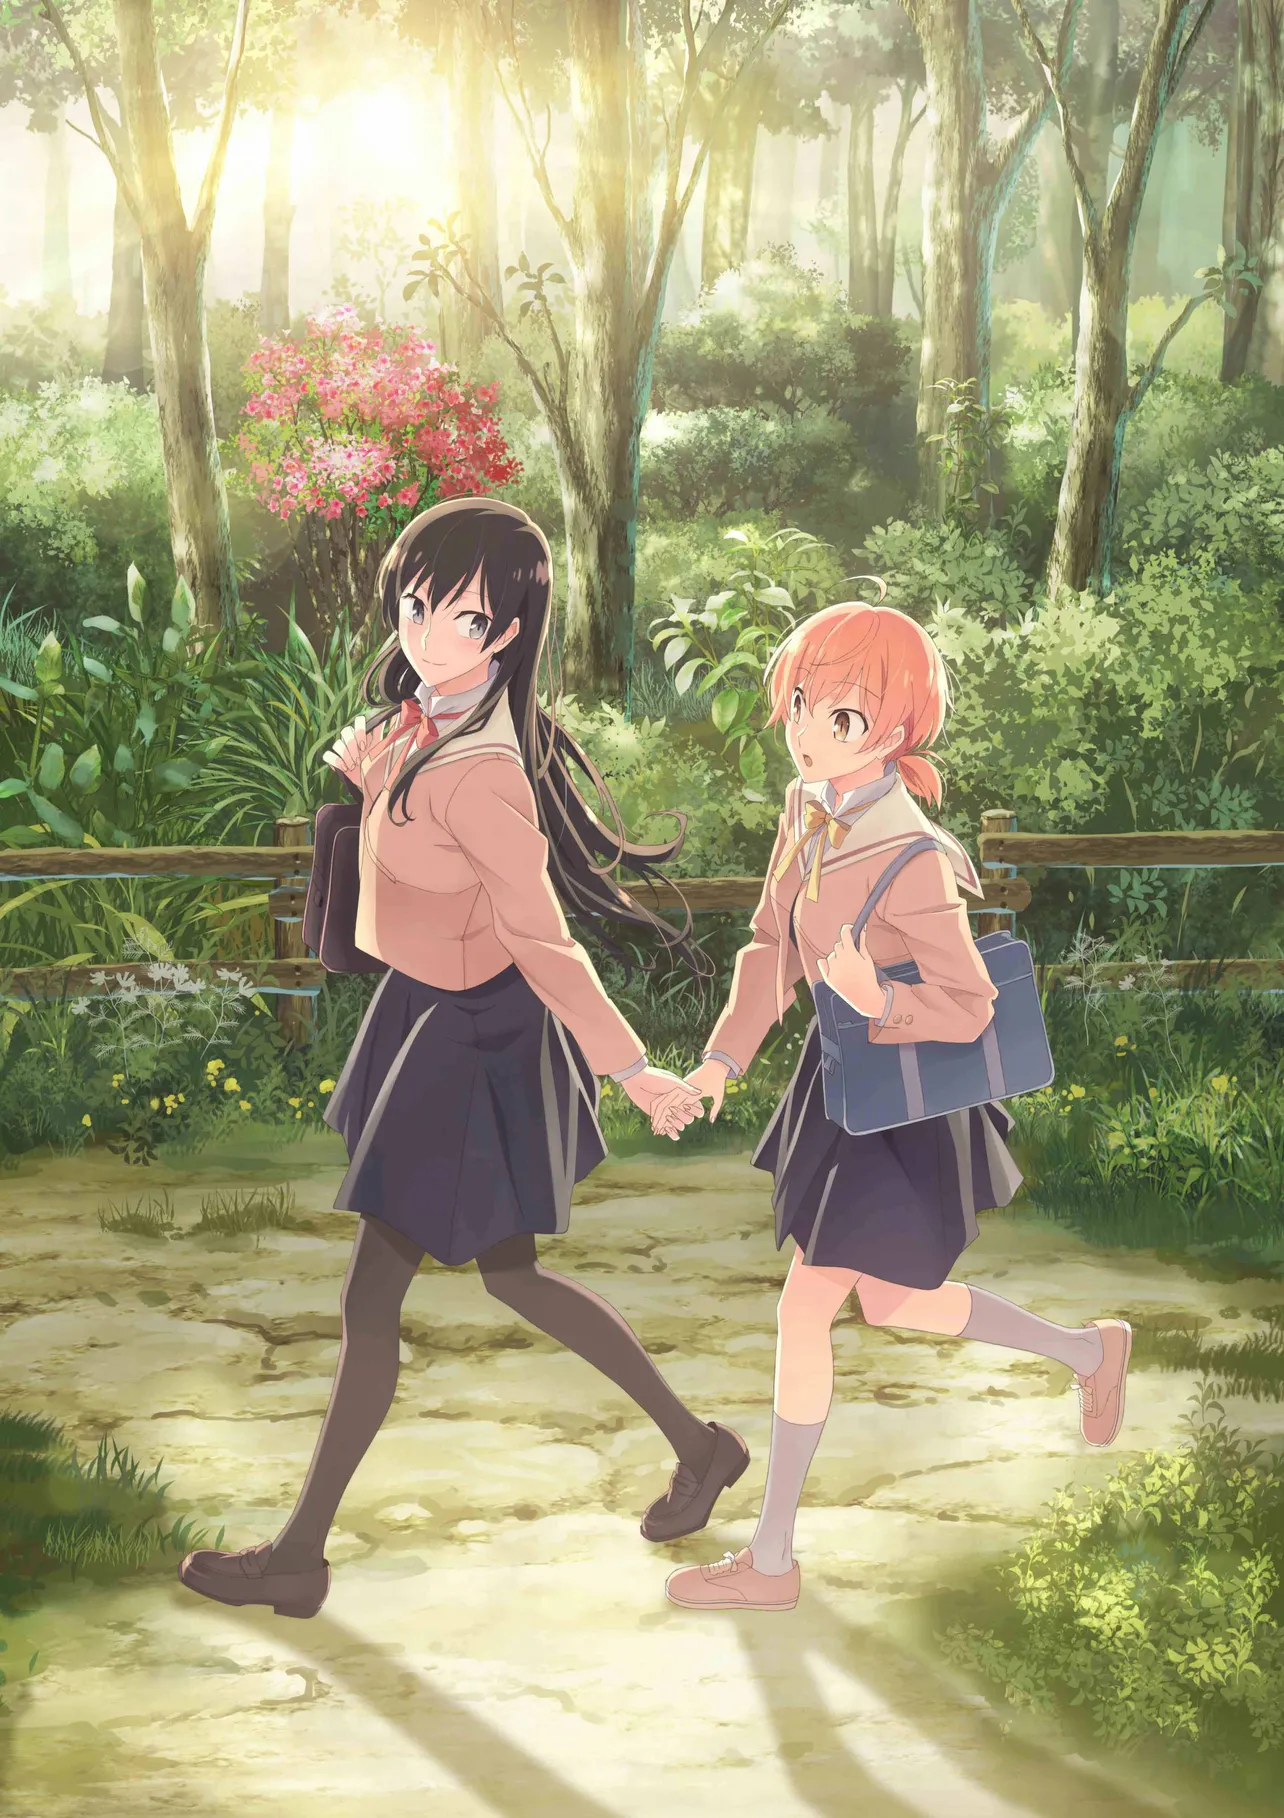 10月から放送が開始するアニメ「やがて君になる」。女子高生同士の秘密の恋が描かれる